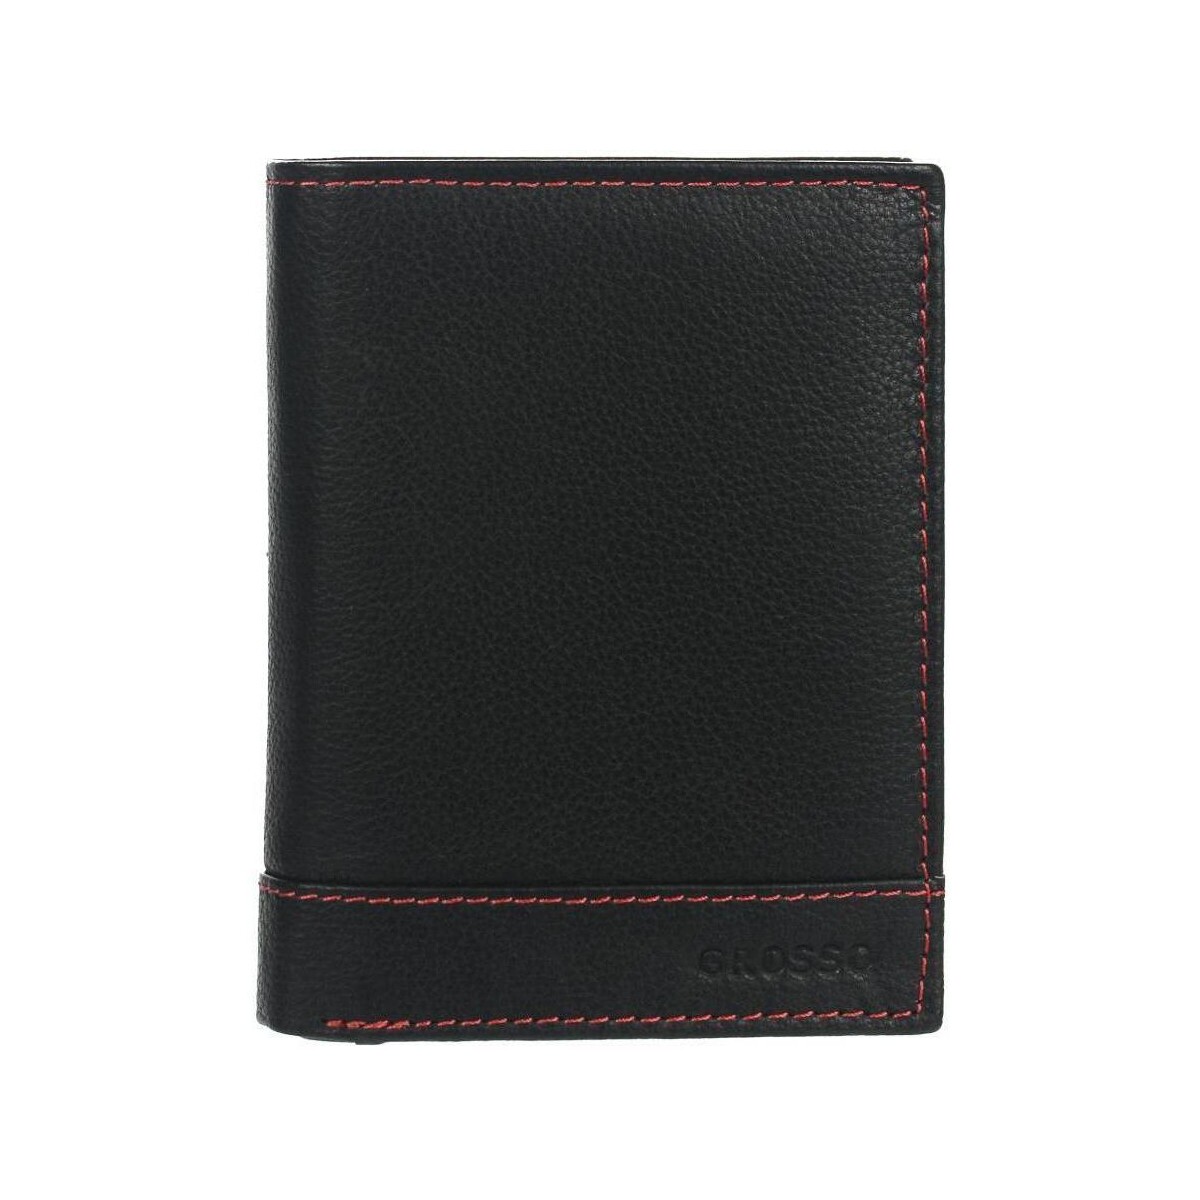 Taška Muži Náprsní tašky Grosso Kožená černá pánská peněženka s červenou nití v krabičce Černá